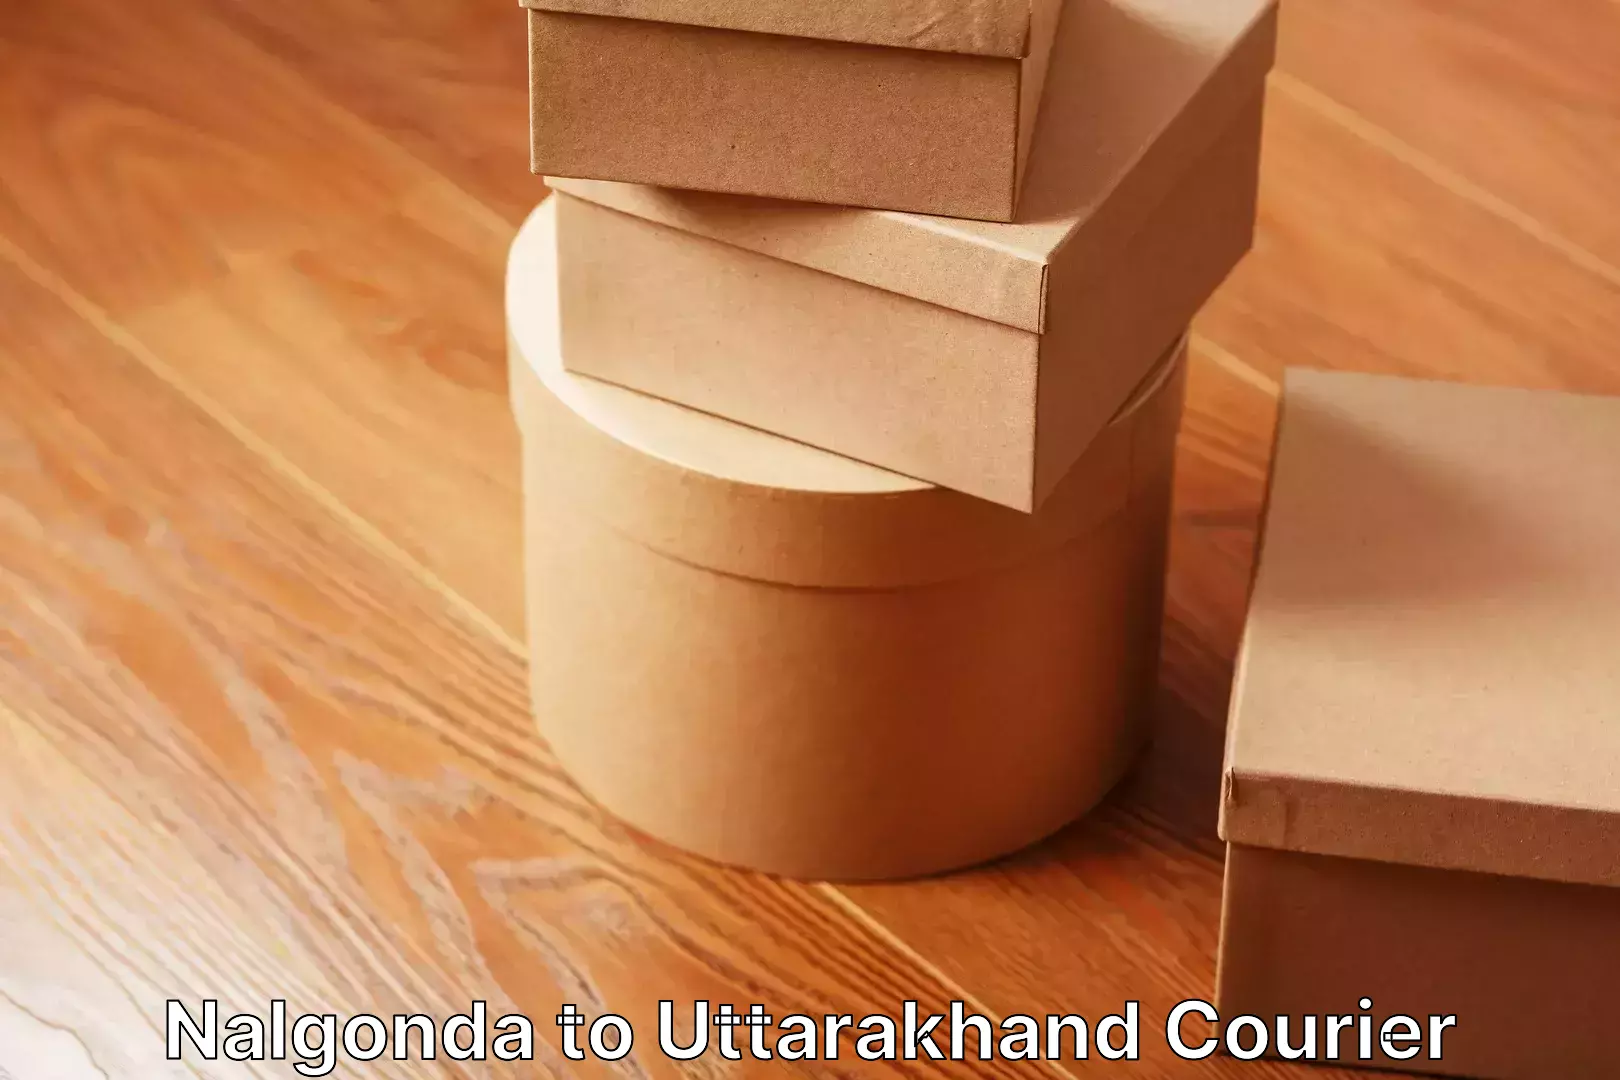 Efficient moving strategies Nalgonda to Uttarakhand